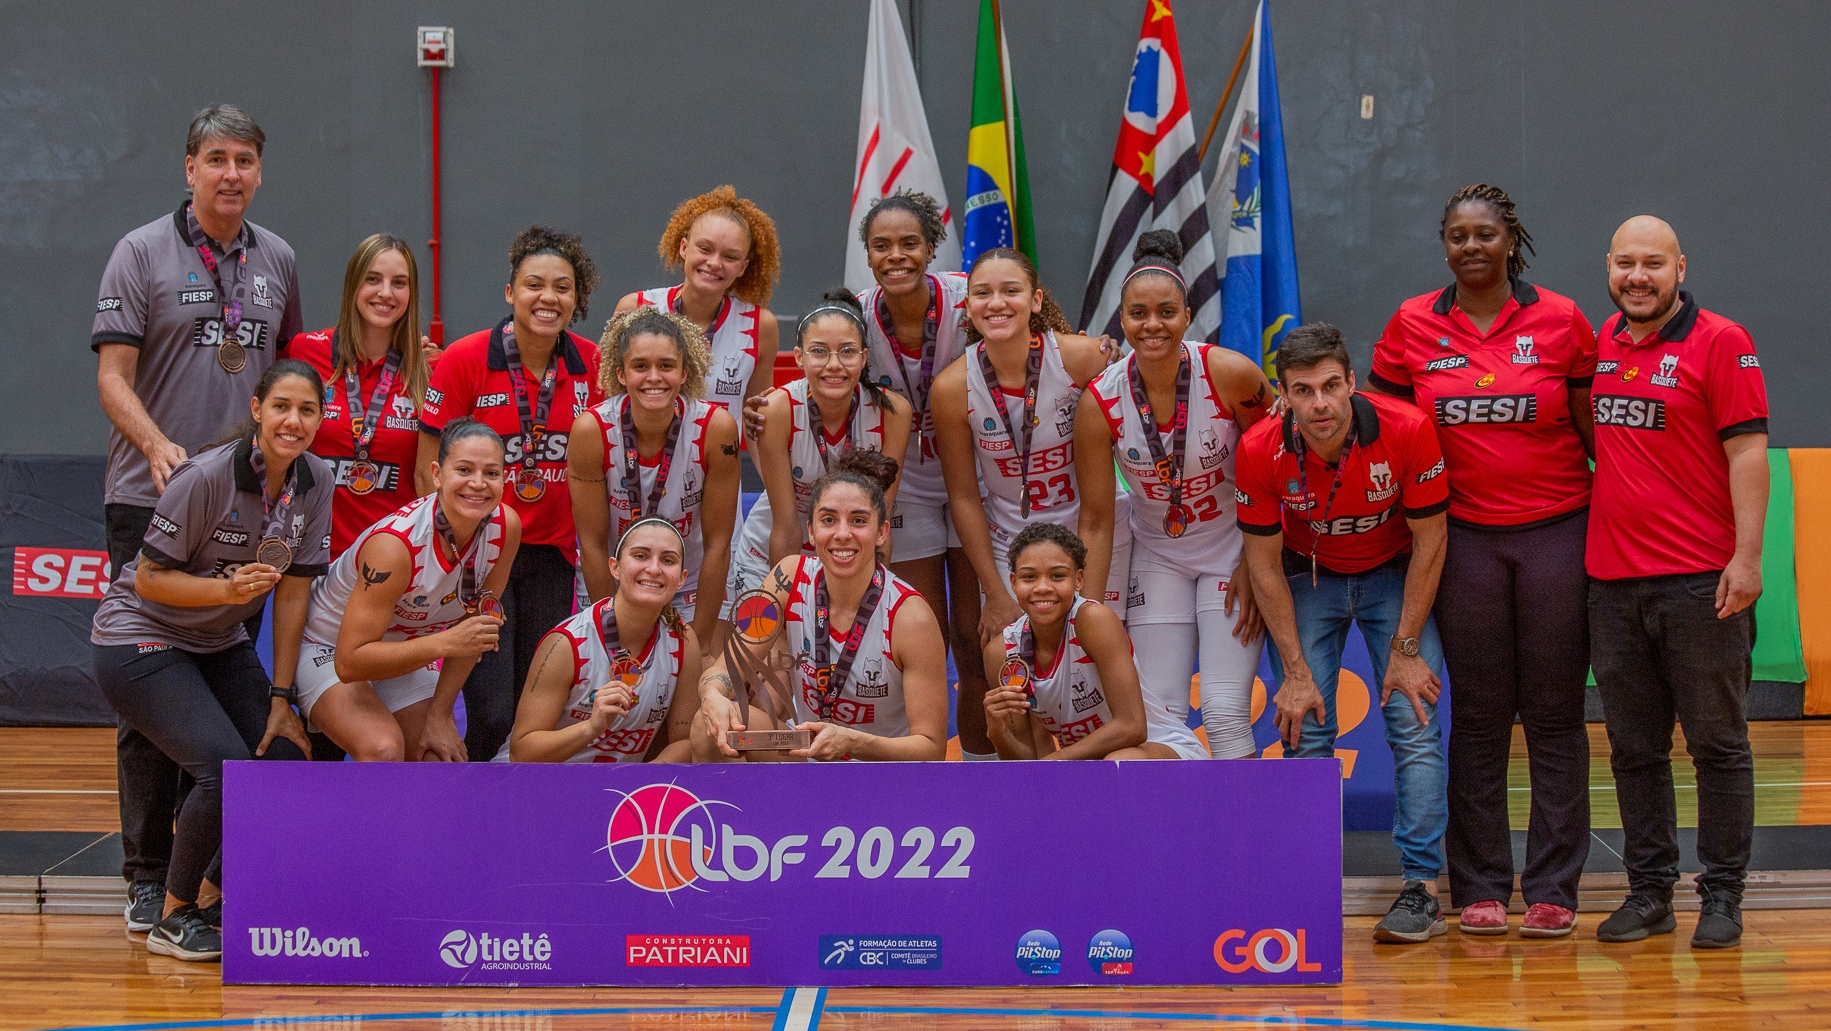 Meninas do basquete iniciam semi do Paulista com vitória - Portal Morada -  Notícias de Araraquara e Região